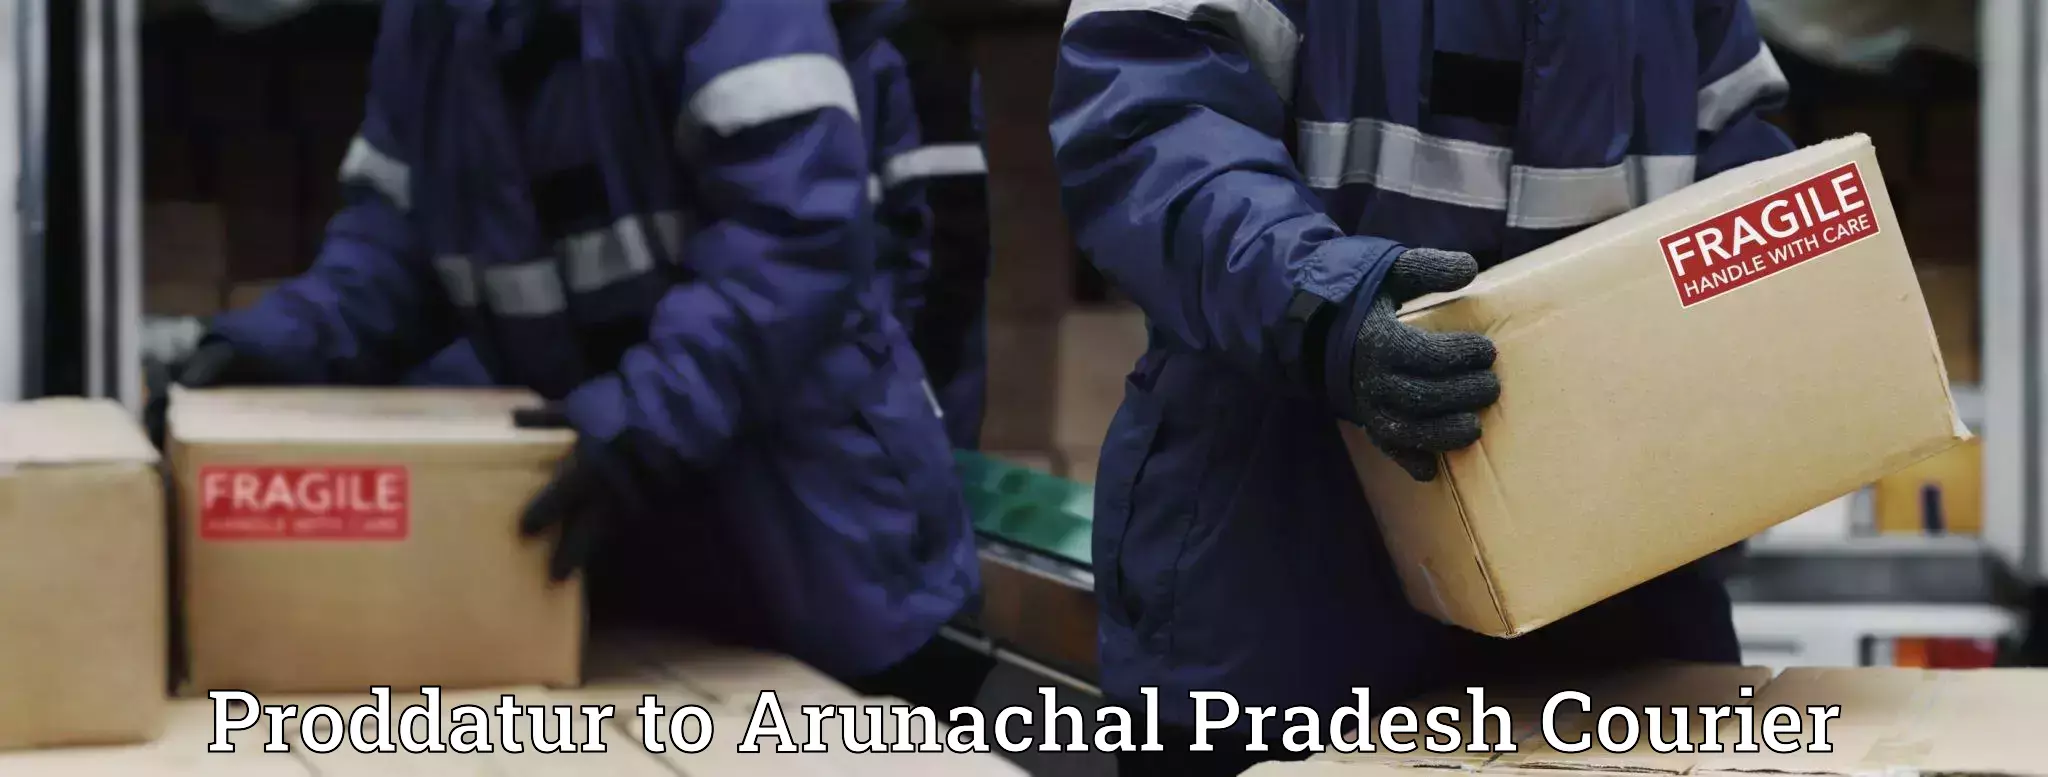 Package delivery network Proddatur to Arunachal Pradesh